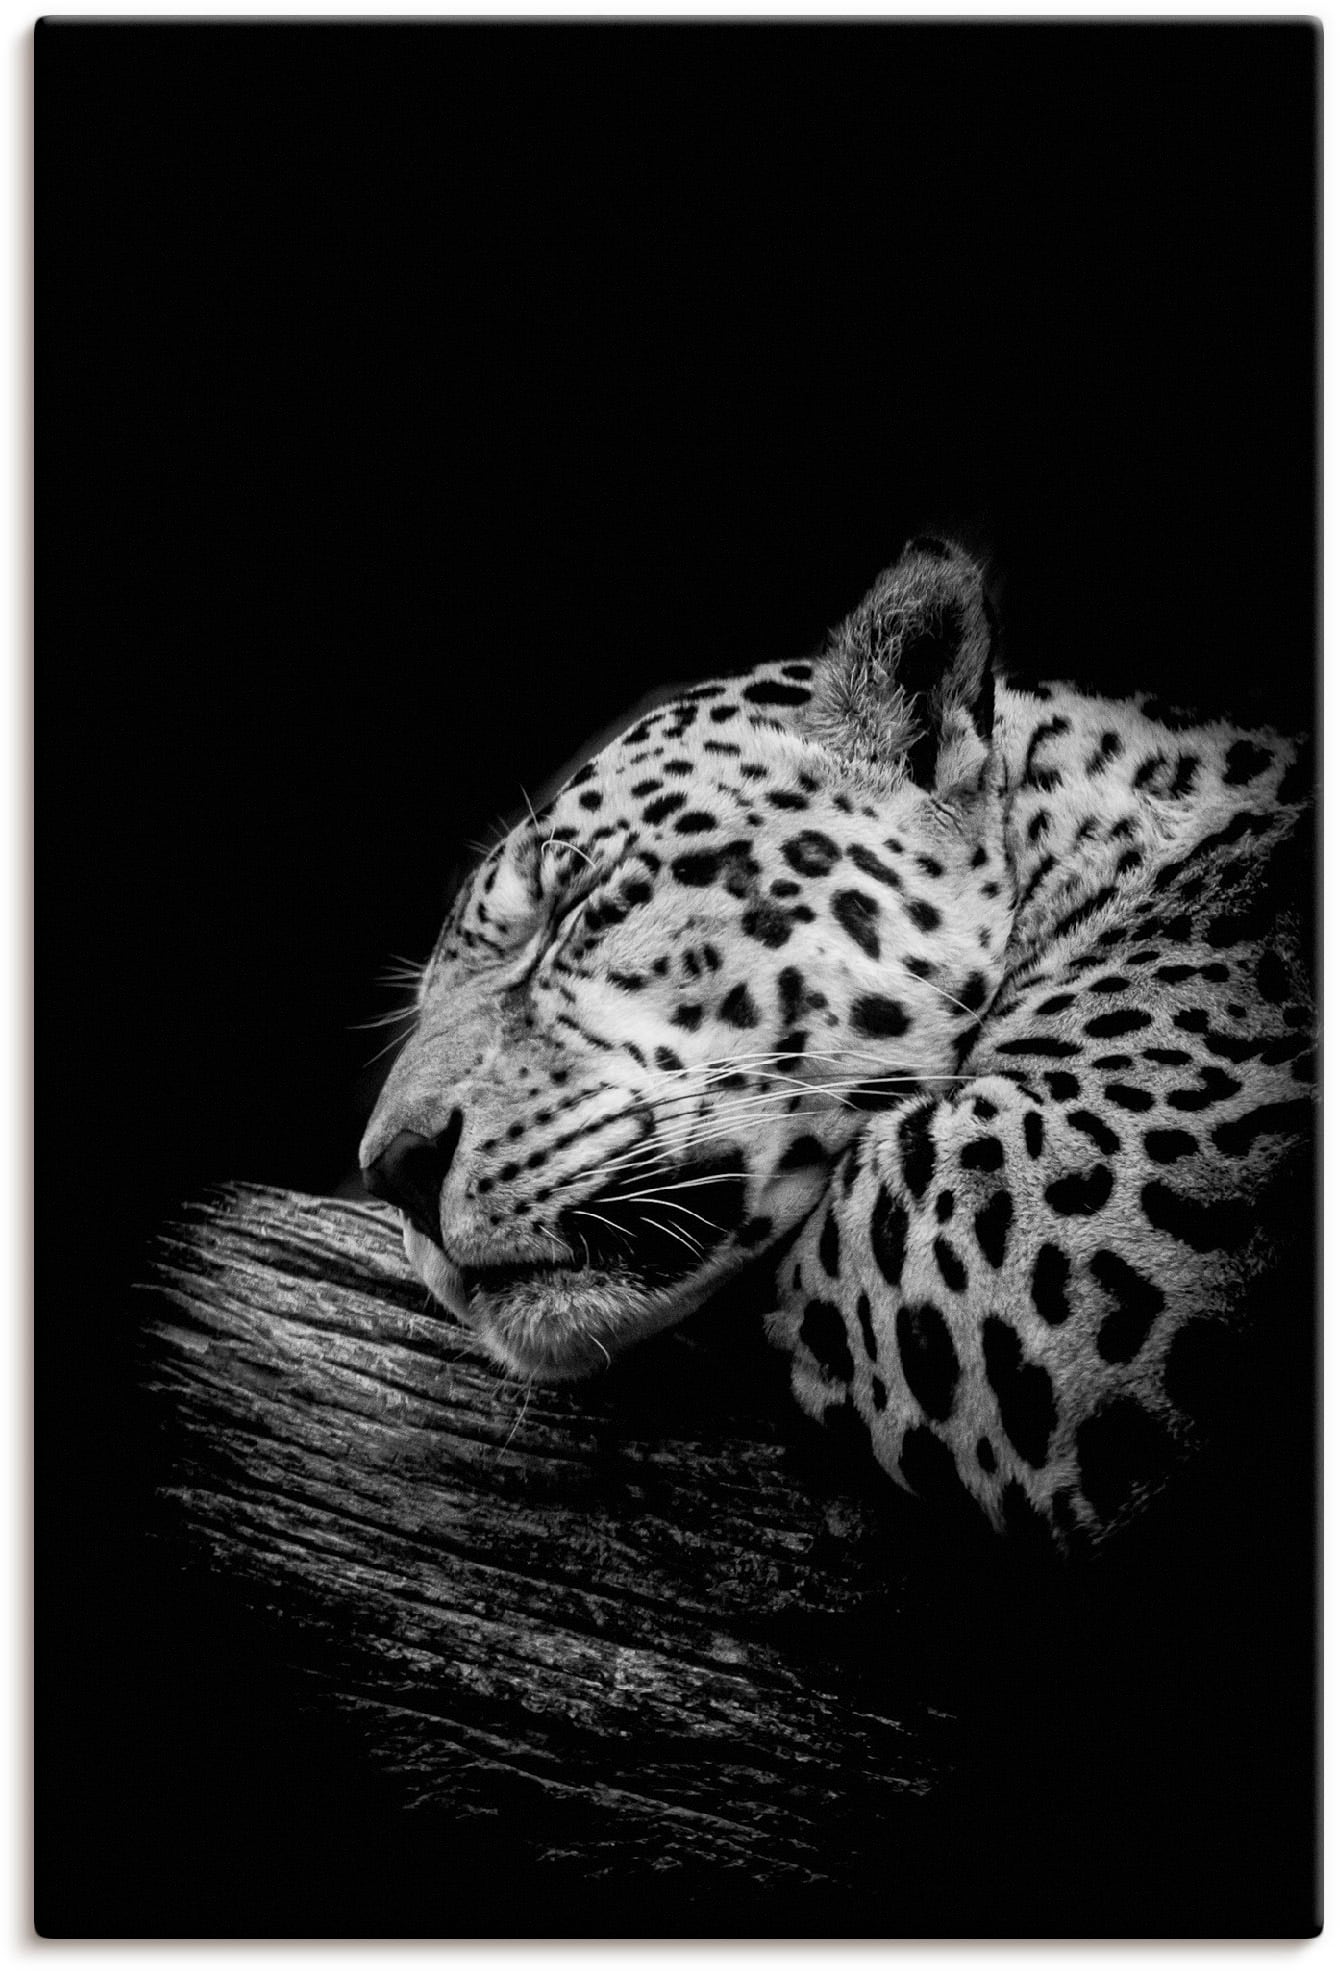 Artland Wandbild »Der schlafende Jaguar«, Wildtiere, (1 St.), als Alubild,  Outdoorbild, Leinwandbild, Poster in verschied. Größen bei OTTO